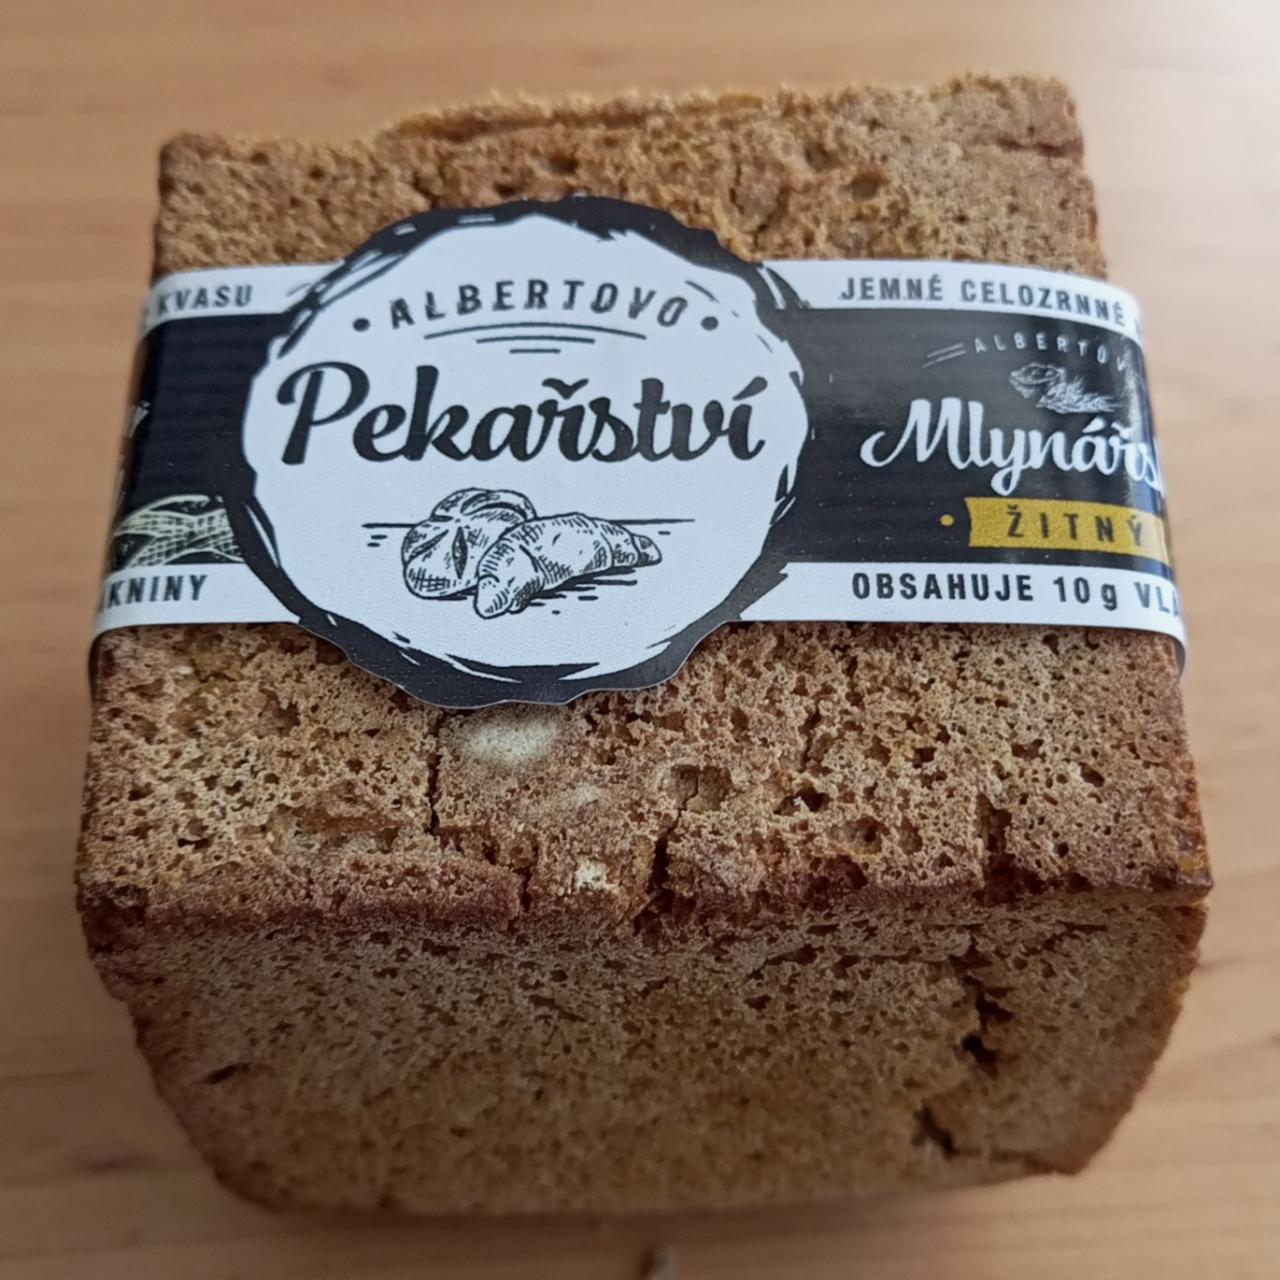 Fotografie - Mlynářský chléb žitný Albertovo pekařství